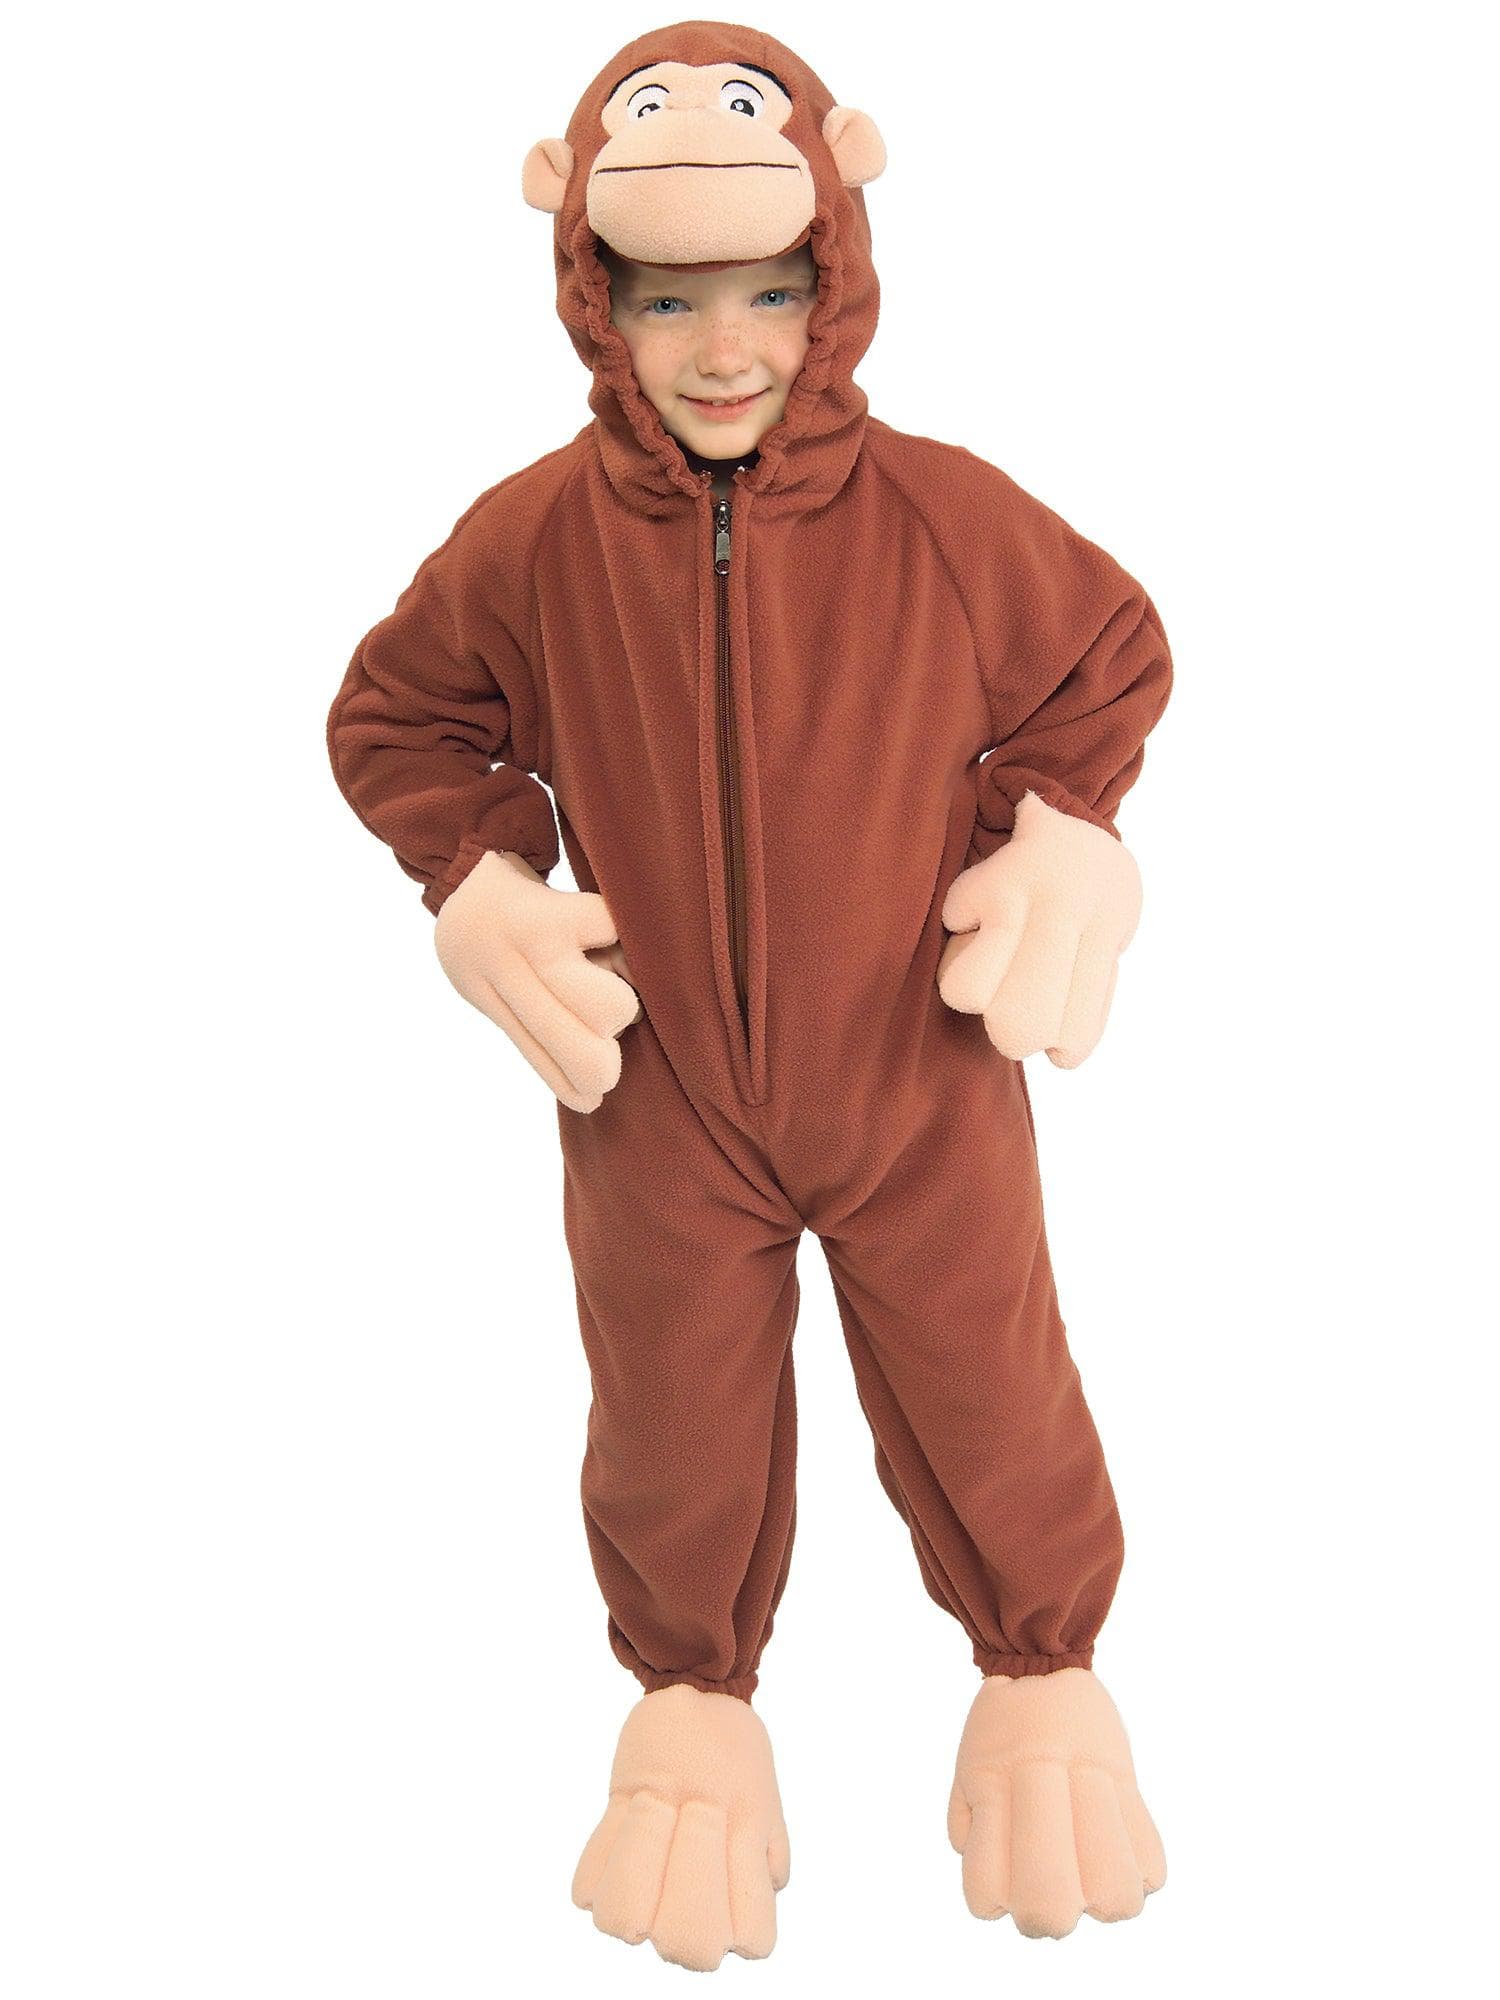 Kids' Curious George Fleece Costume - costumes.com